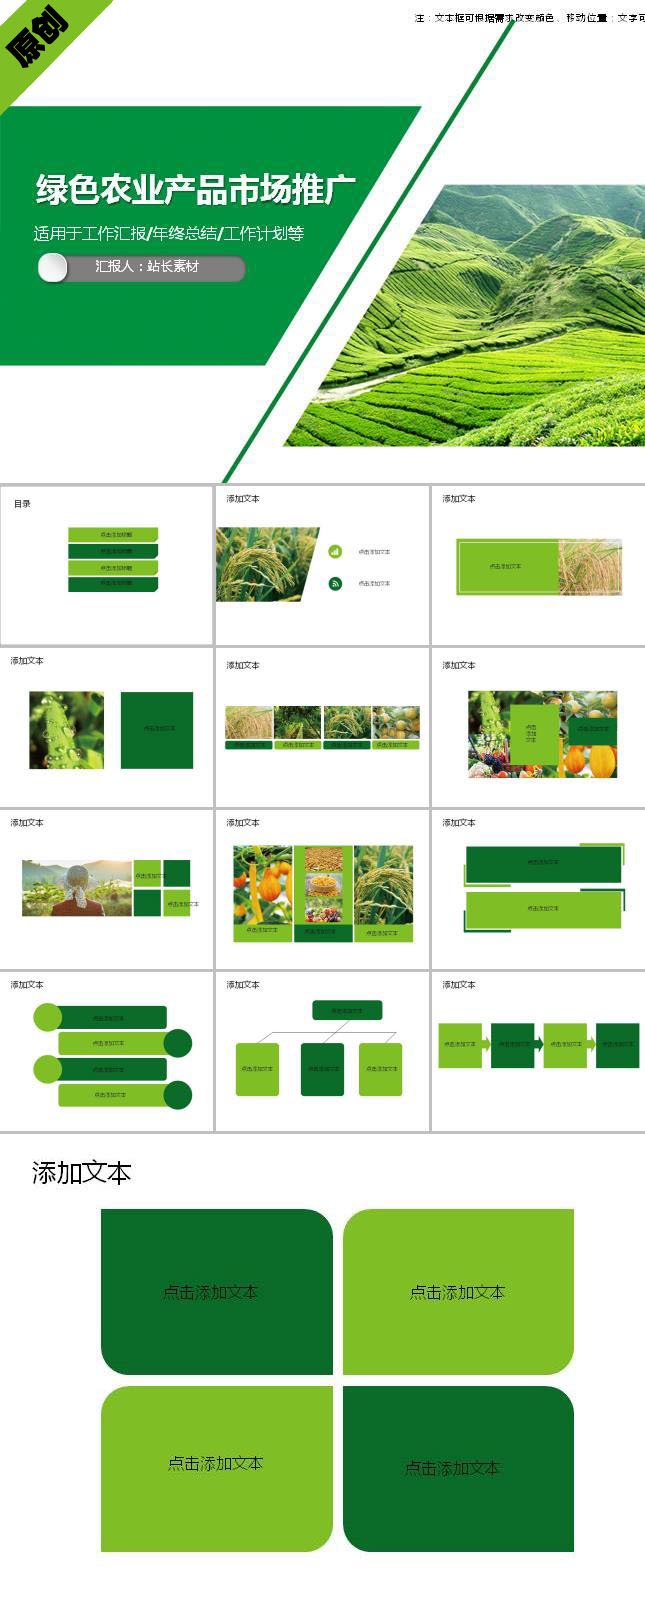 绿色农业产品宣传市场推广ppt模板